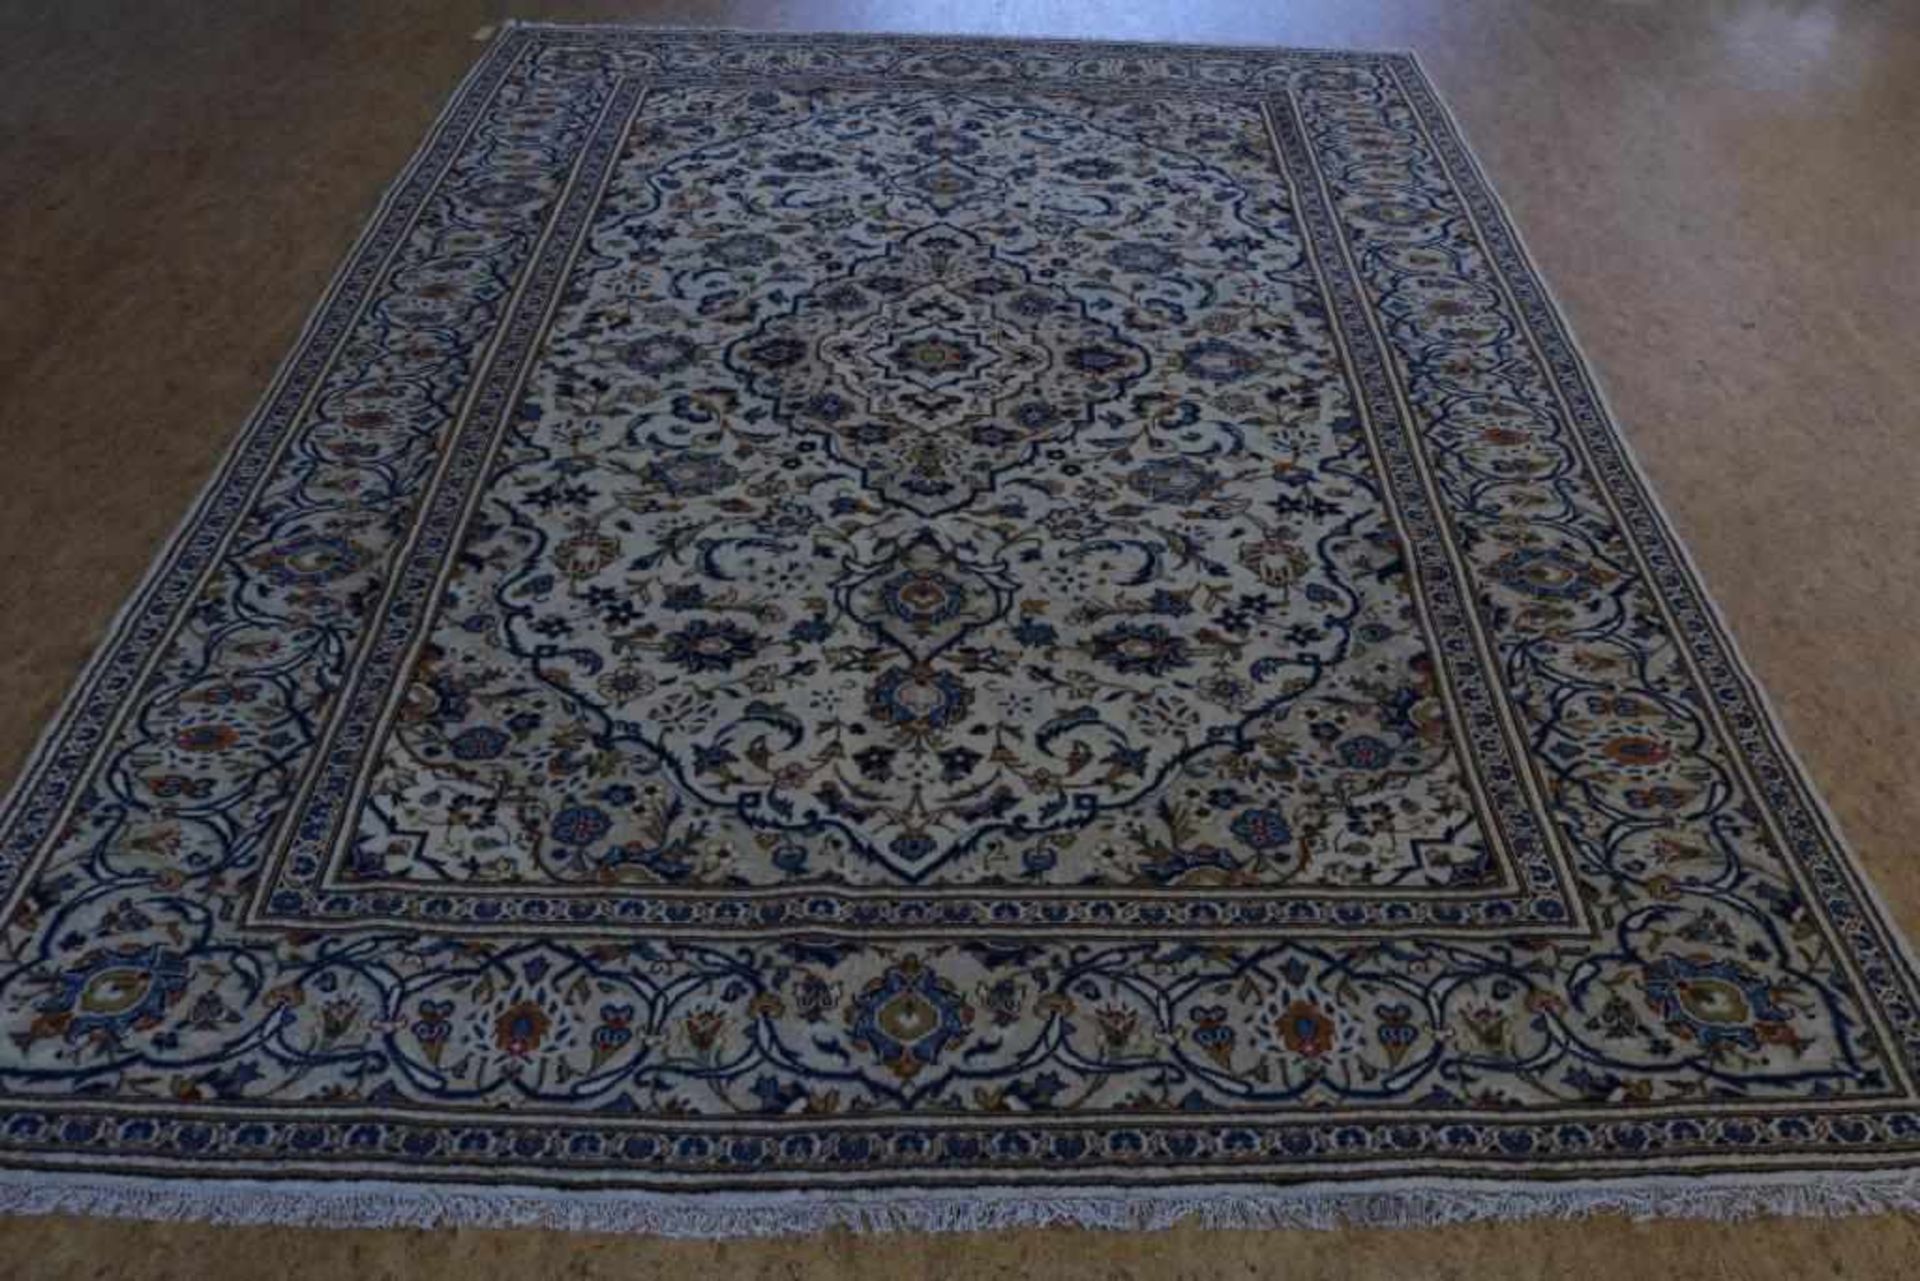 Keshan carpet 348 x 238 cm.Tapijt, Keshan 348 x 238 cm.